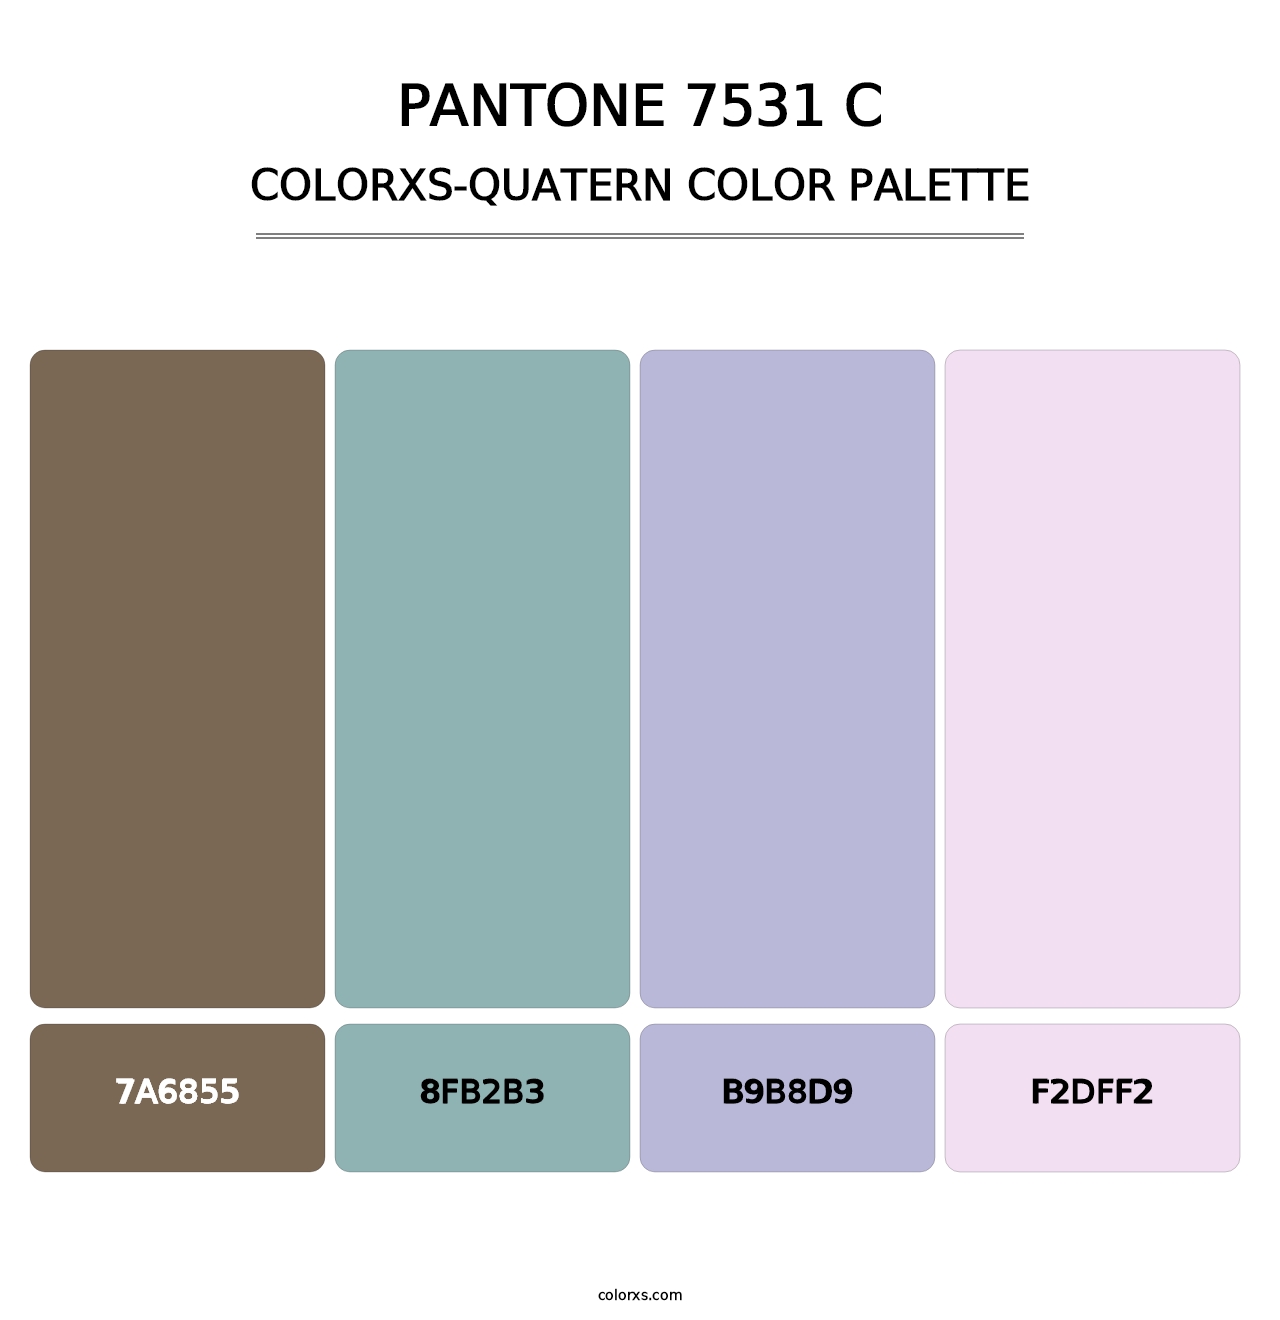 PANTONE 7531 C - Colorxs Quatern Palette